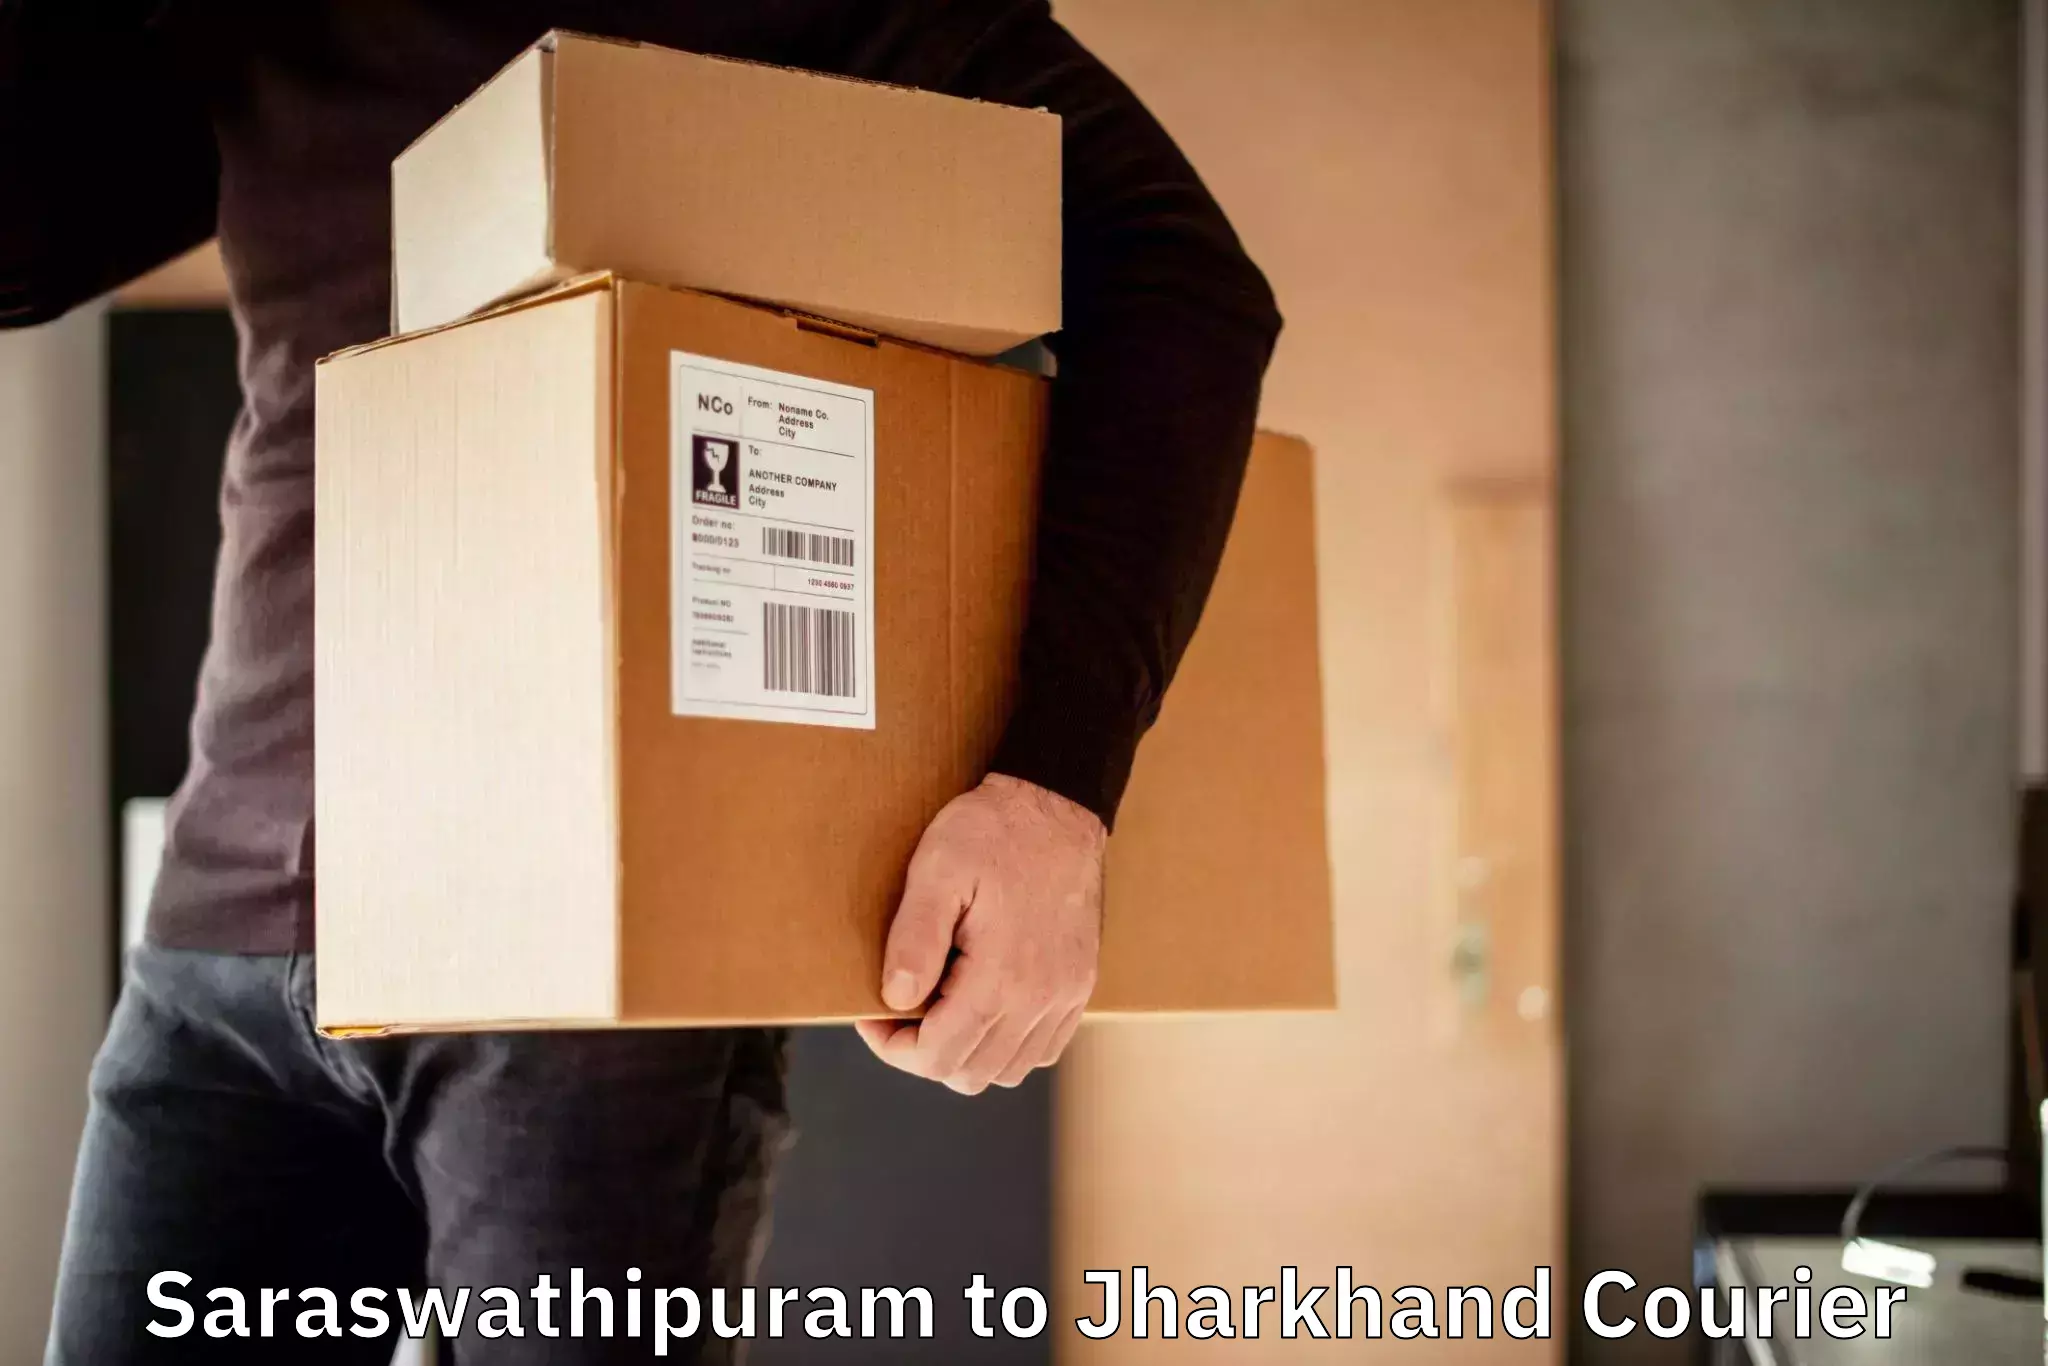 Large package courier Saraswathipuram to NIT Jamshedpur